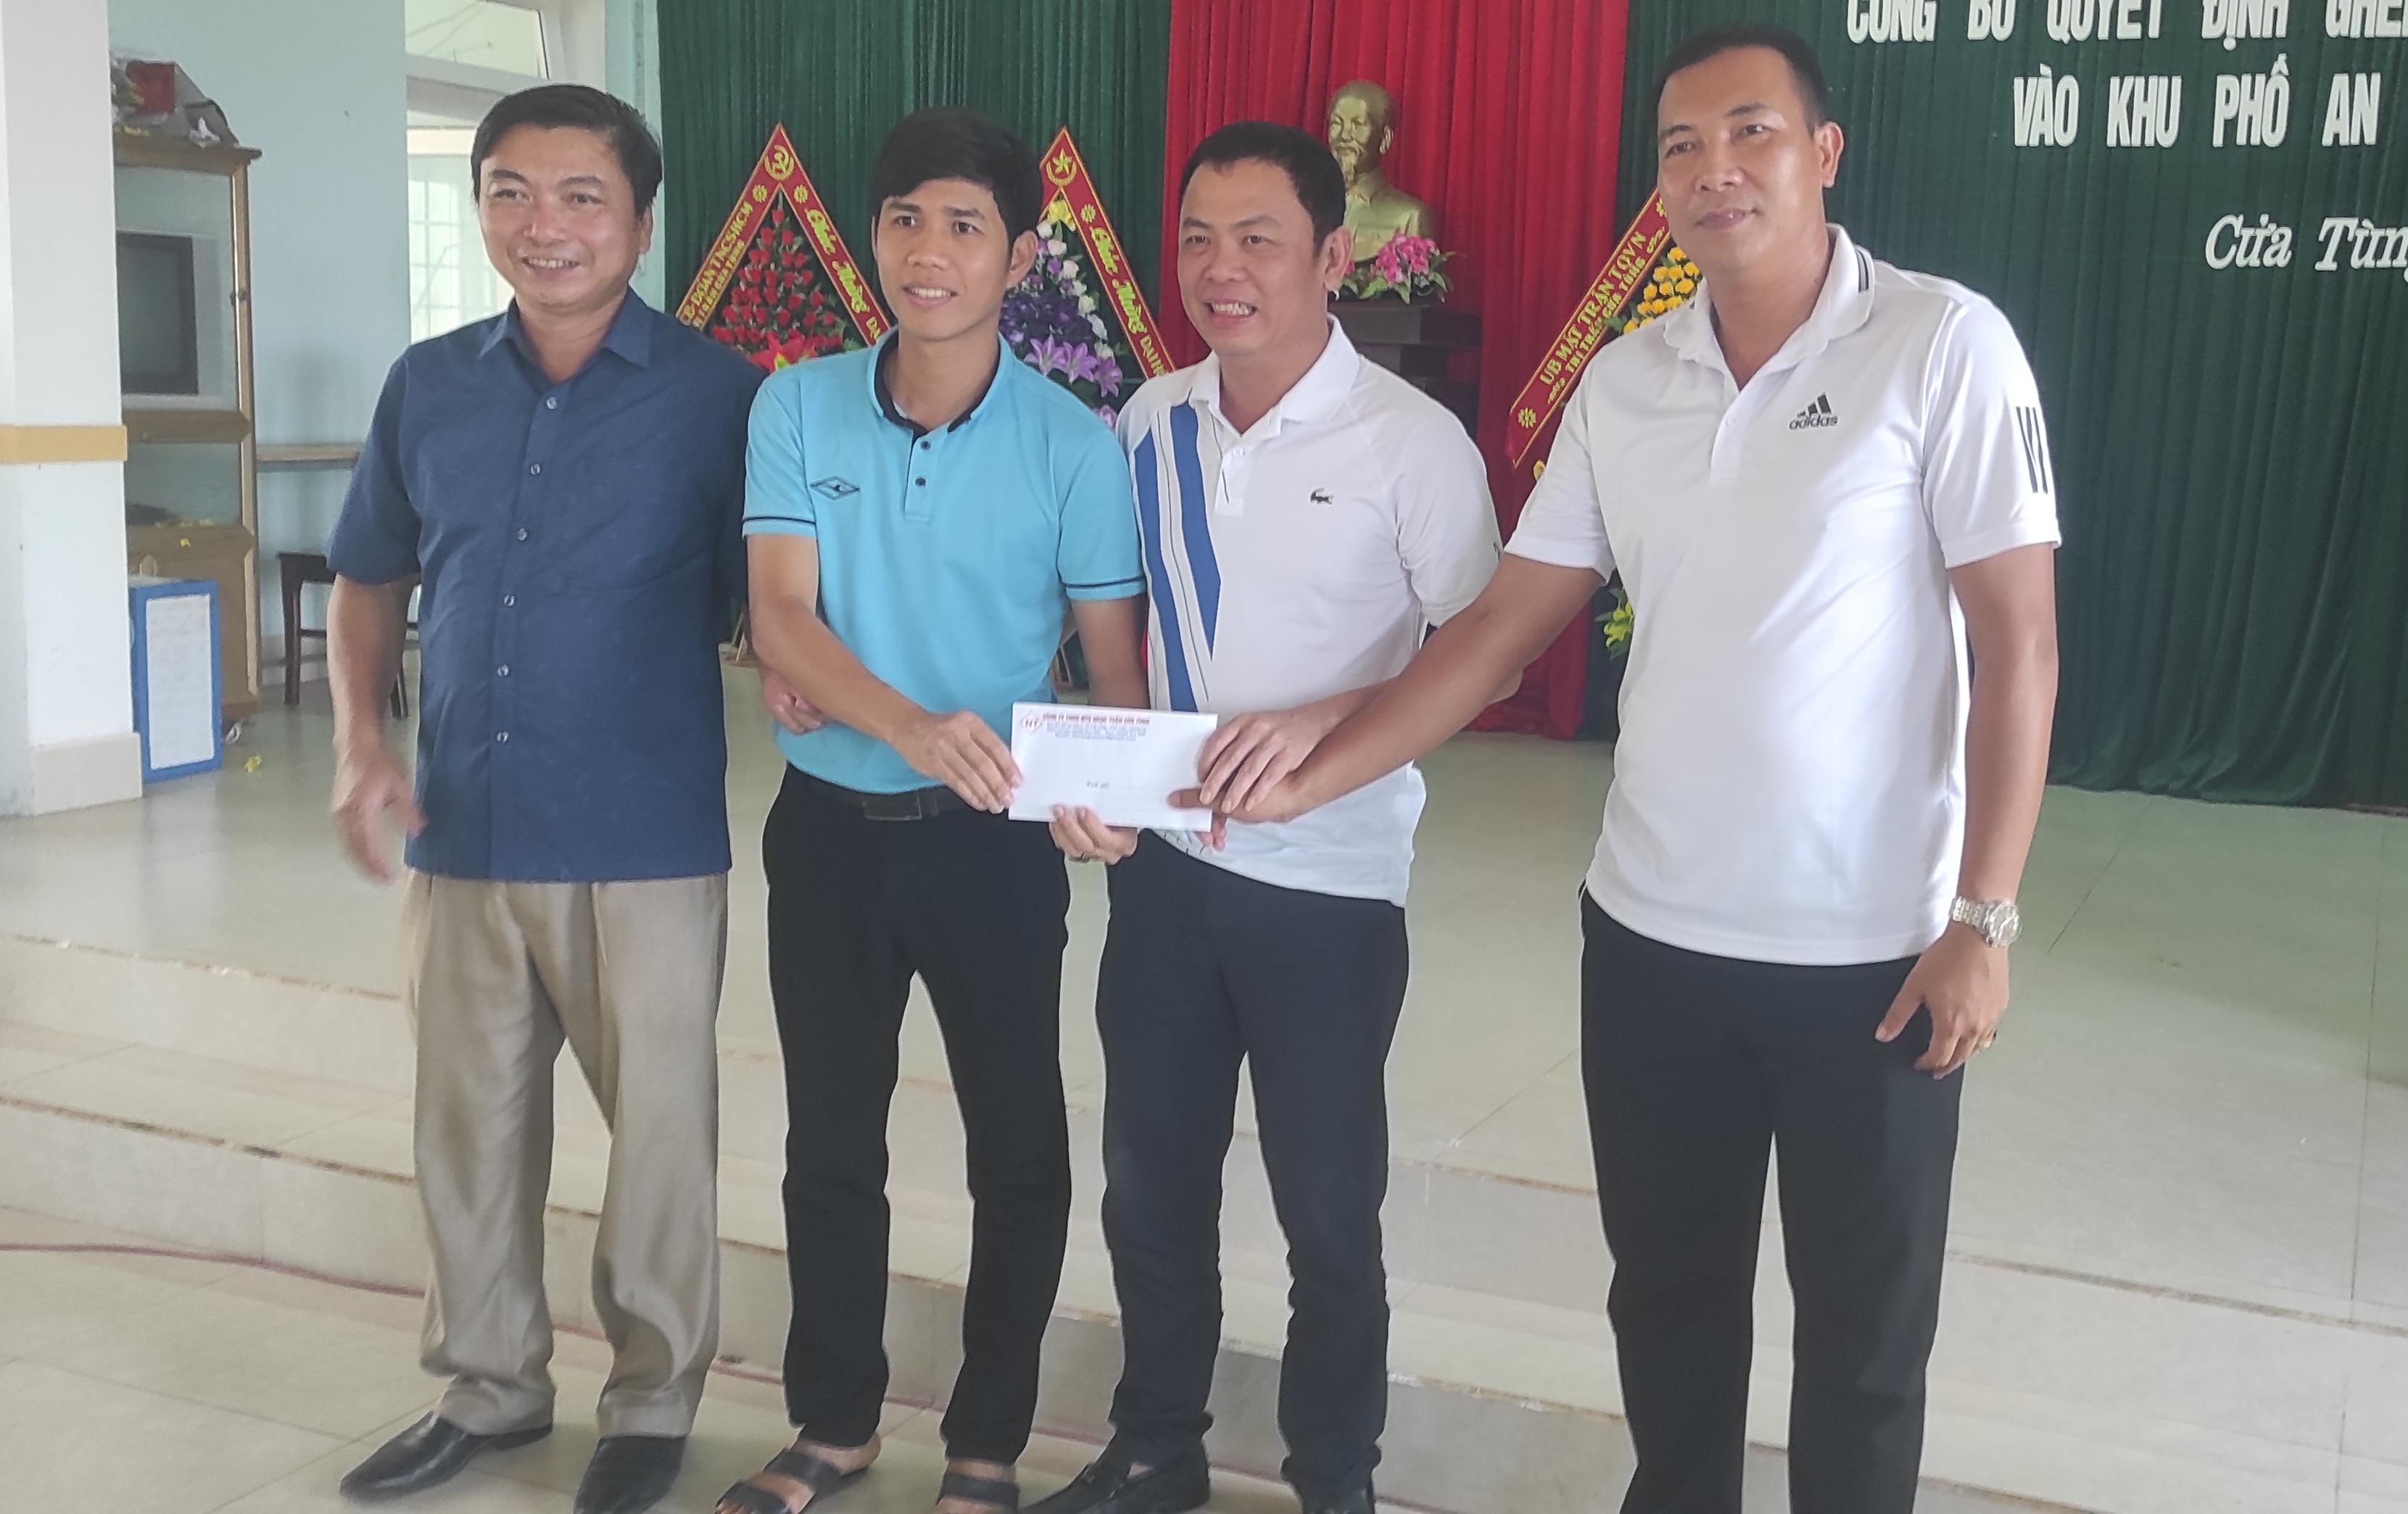 Thị trấn Cửa Tùng khởi động tham gia Đại hội TDTT huyện Vĩnh Linh Lần thứ IX- năm 2022